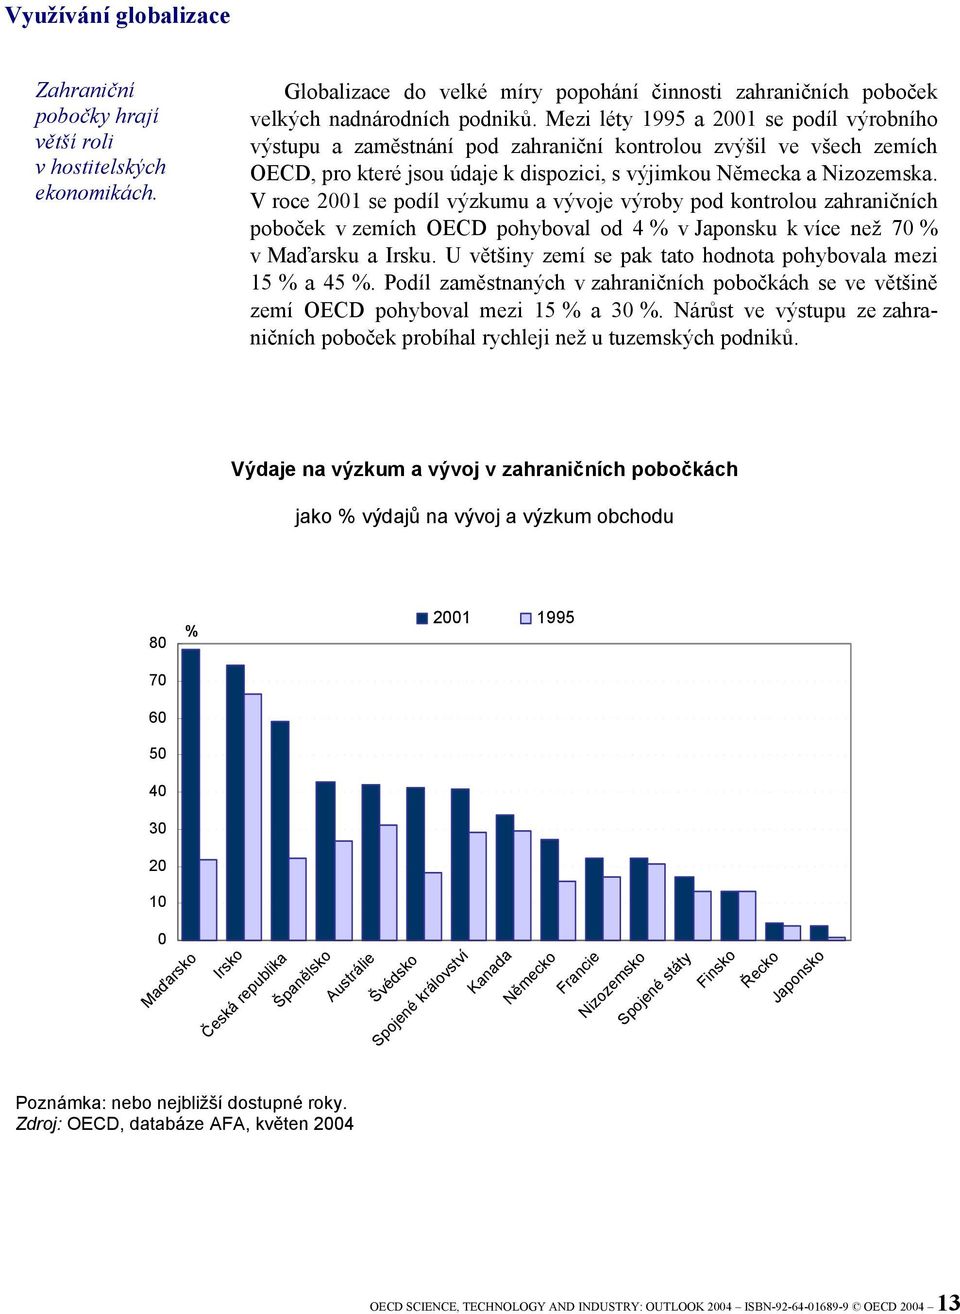 V roce 2001 se podíl výzkumu a vývoje výroby pod kontrolou zahraničních poboček v zemích OECD pohyboval od 4 % v Japonsku k více než 70 % v Maďarsku a Irsku.